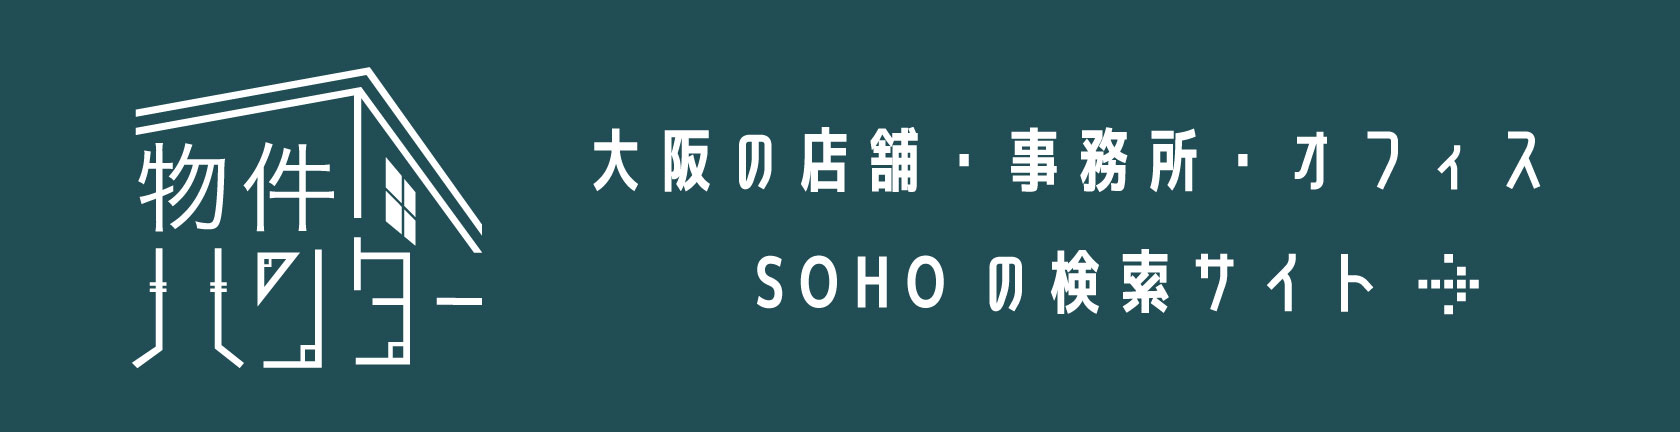 物件ハンター:大阪の店舗・事務所・オフィスSOHOの検索サイト